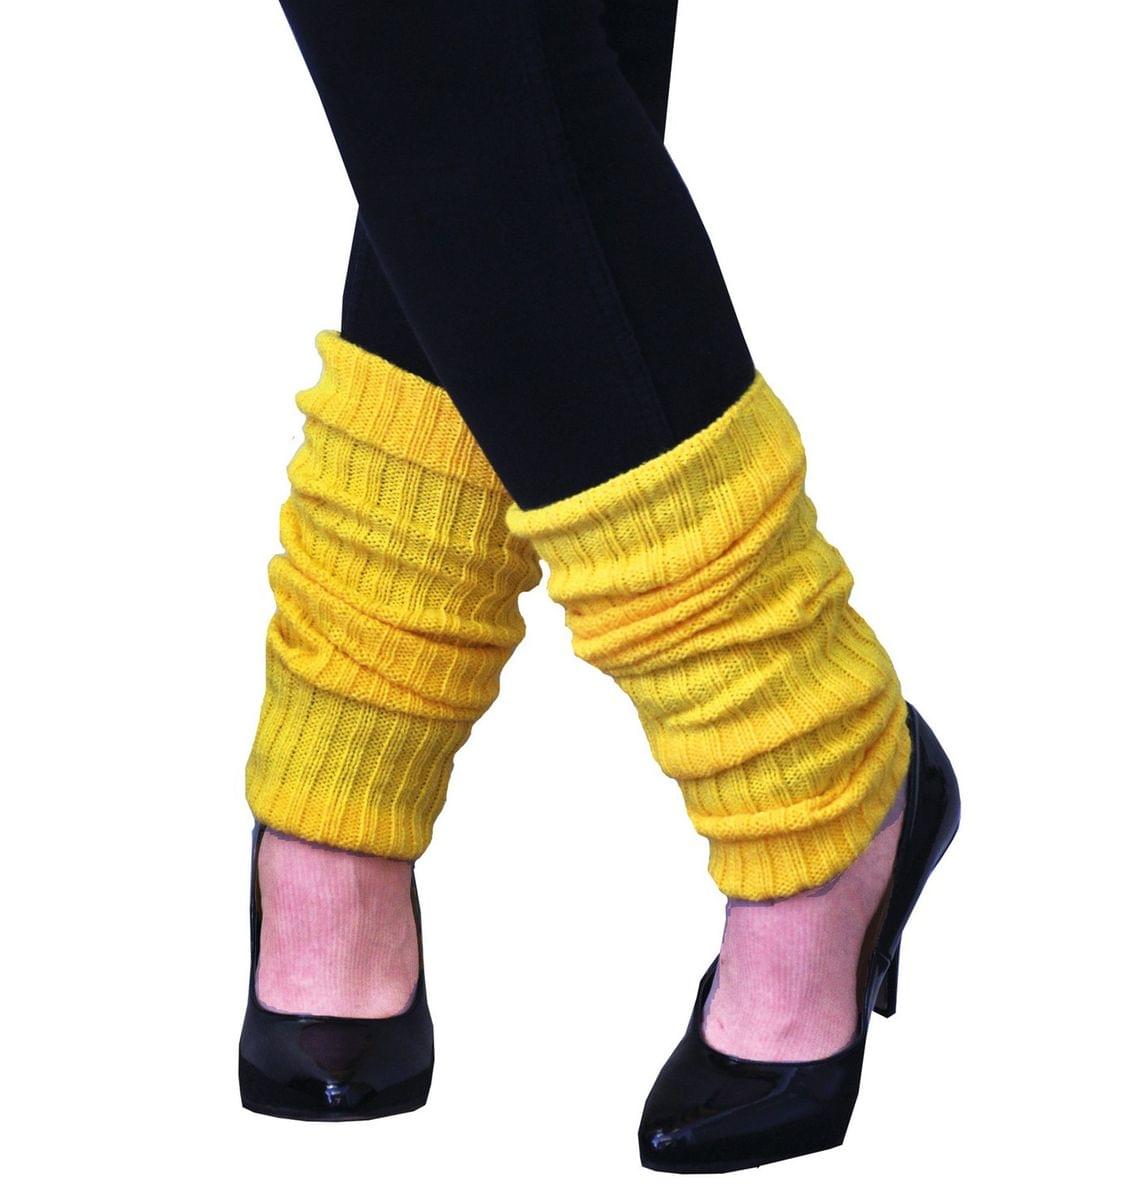 Adult Costume Leg Warmers, Neon Yellow